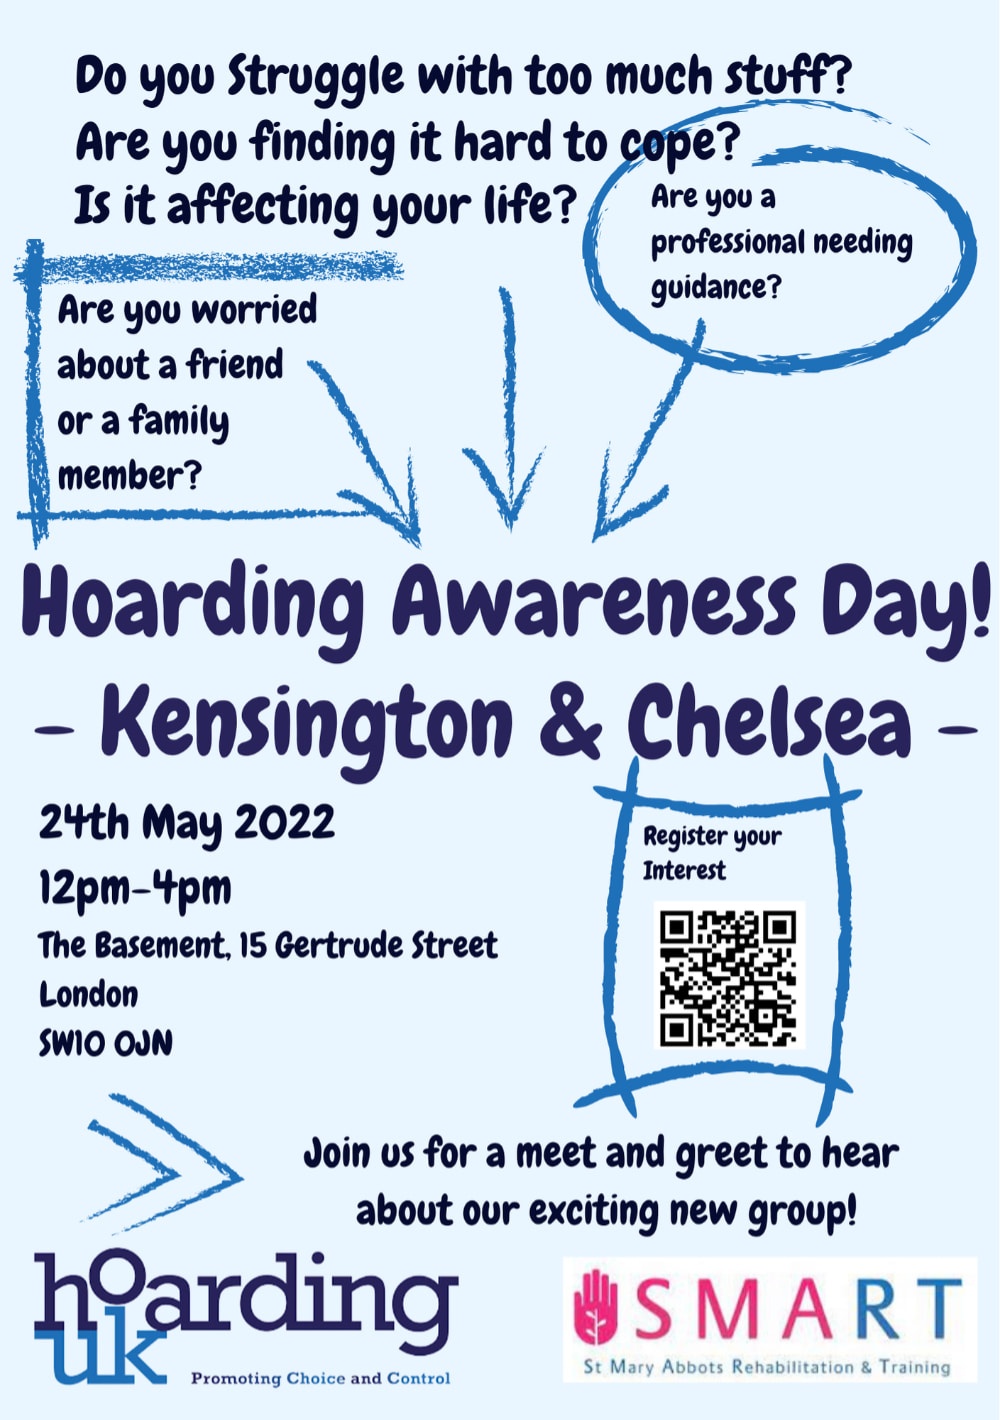 Hoarding Awarness Day - Kensington & Chelsea